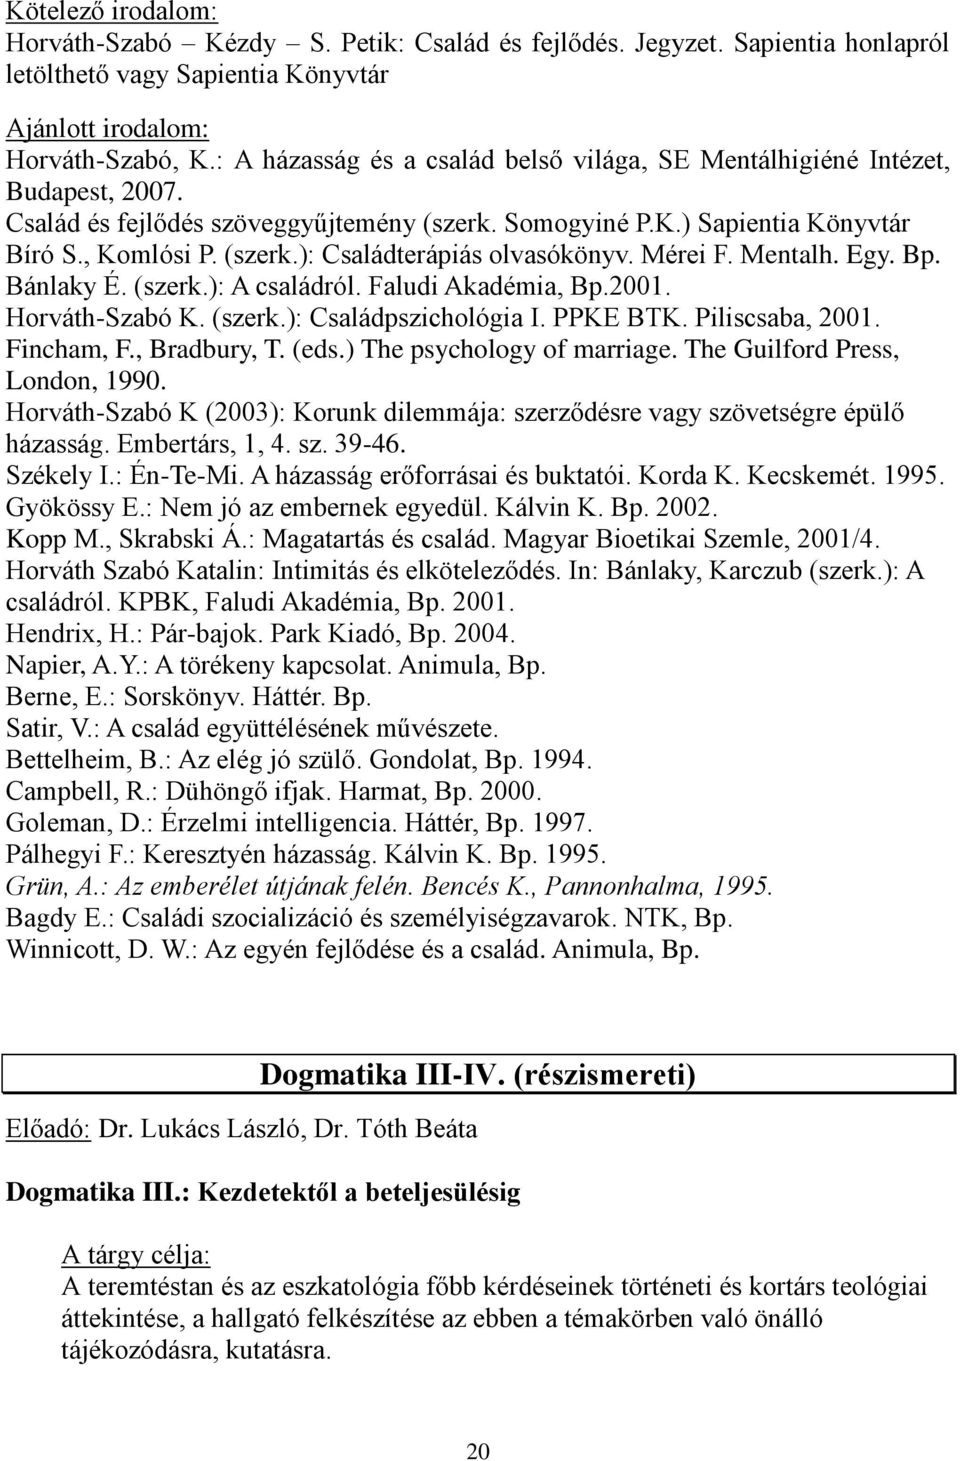 Mérei F. Mentalh. Egy. Bp. Bánlaky É. (szerk.): A családról. Faludi Akadémia, Bp.2001. Horváth-Szabó K. (szerk.): Családpszichológia I. PPKE BTK. Piliscsaba, 2001. Fincham, F., Bradbury, T. (eds.